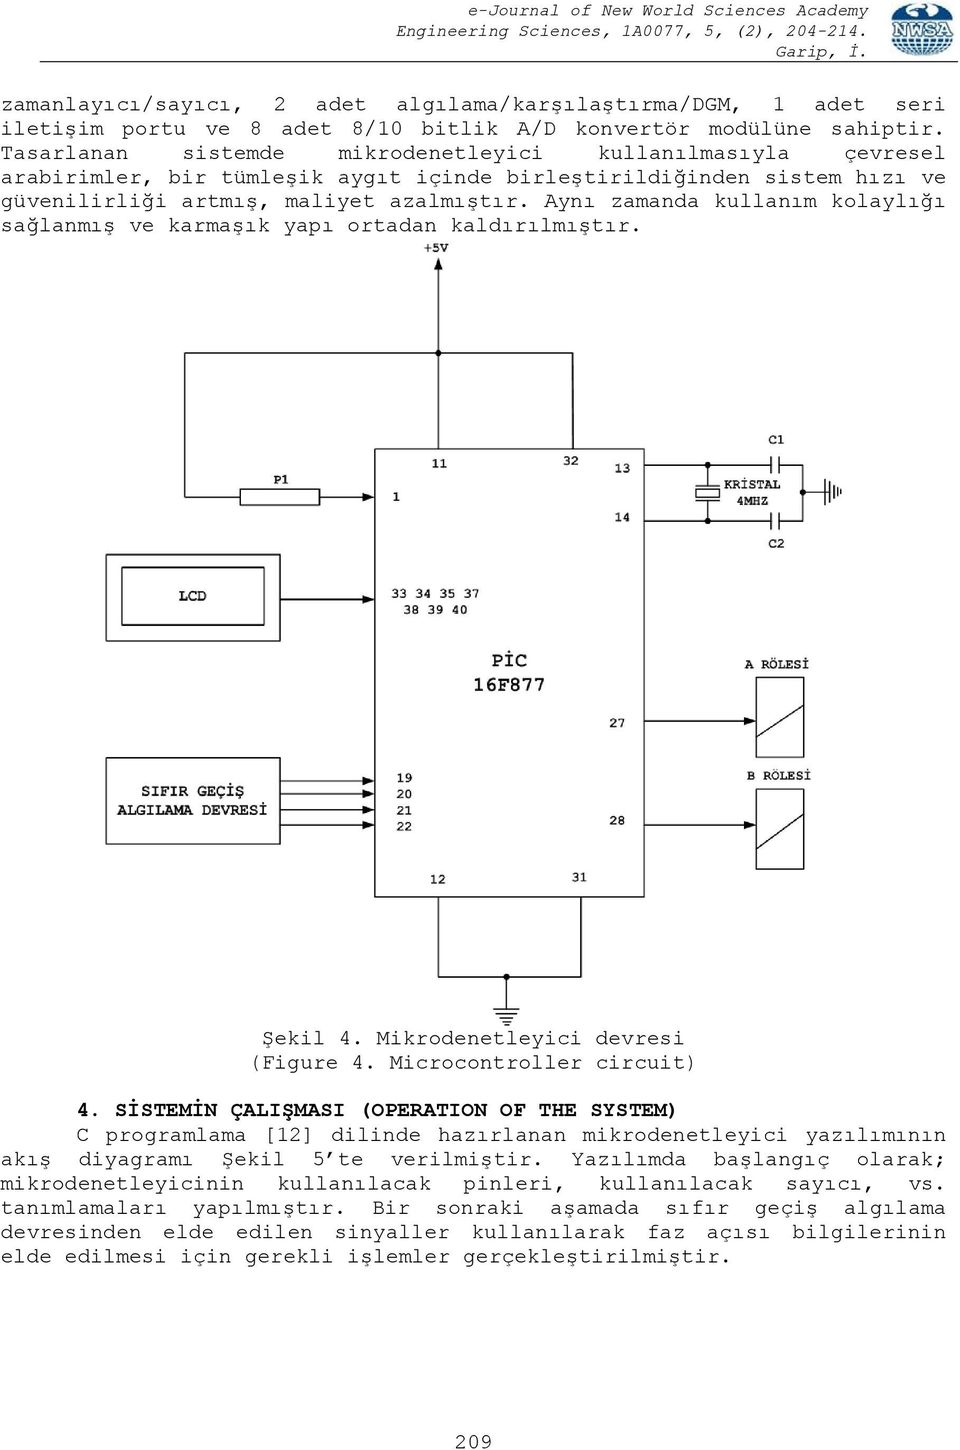 Aynı zamanda kullanım kolaylığı sağlanmış ve karmaşık yapı ortadan kaldırılmıştır. Şekil 4. Mikrodenetleyici devresi (Figure 4. Microcontroller circuit) 4.